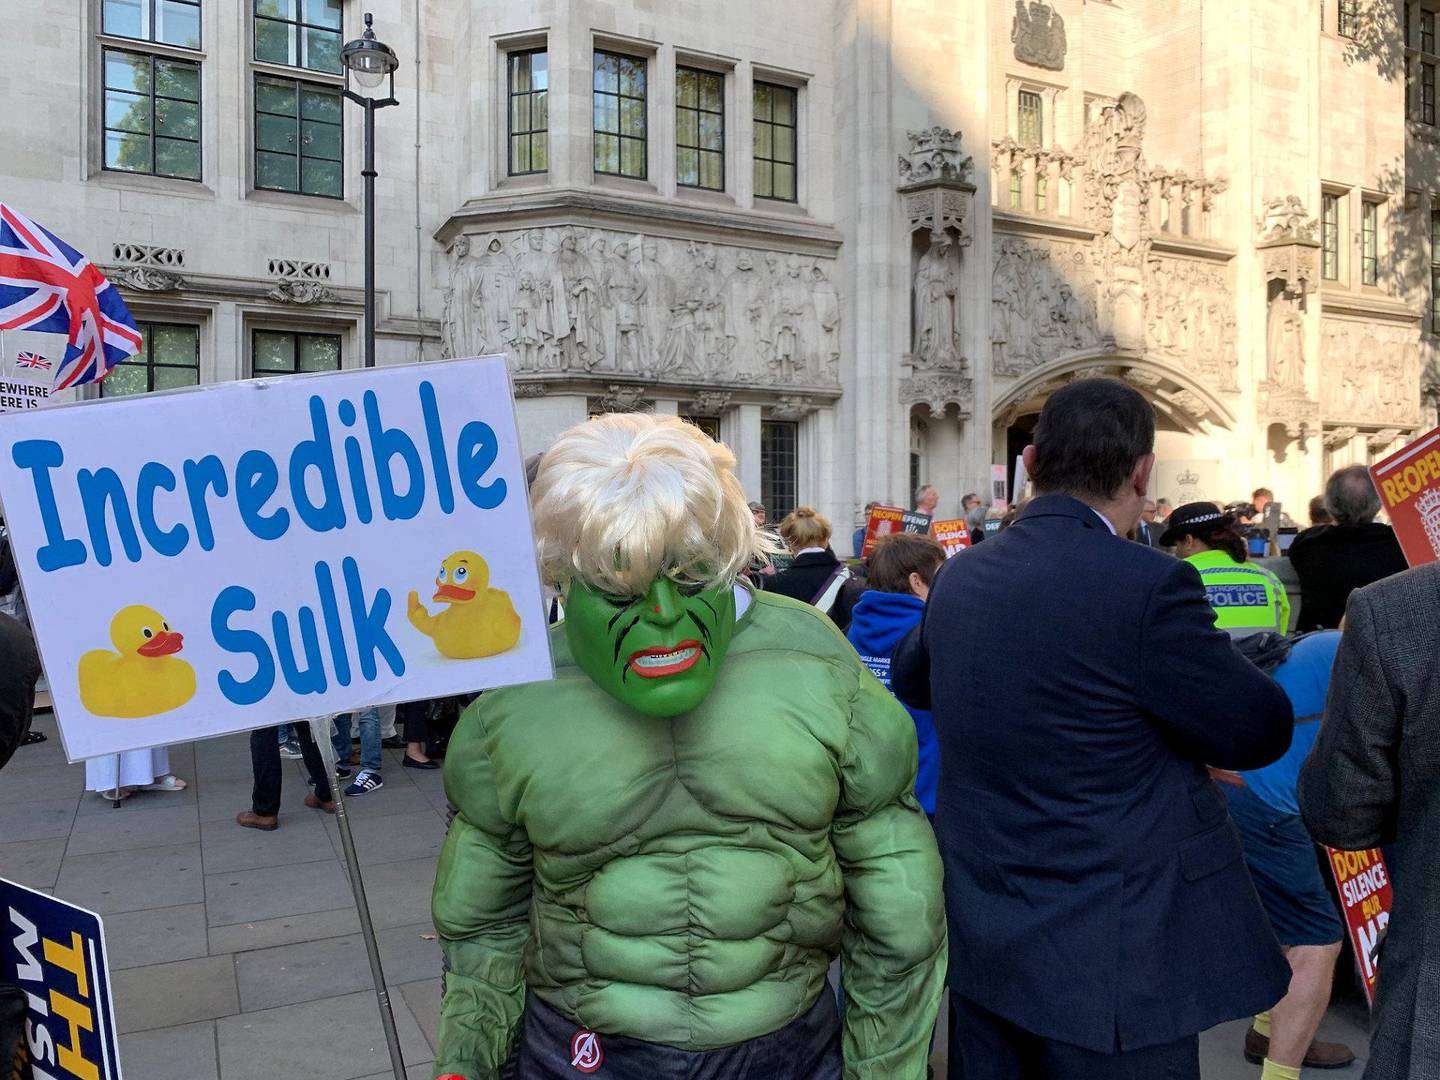 HULK: Statsminister Boris Johnson har sammenlignet Storbritannia med hulken i brexit-spørsmålet. Her en demonstrant utkledd som Hulken/Boris Johnson.